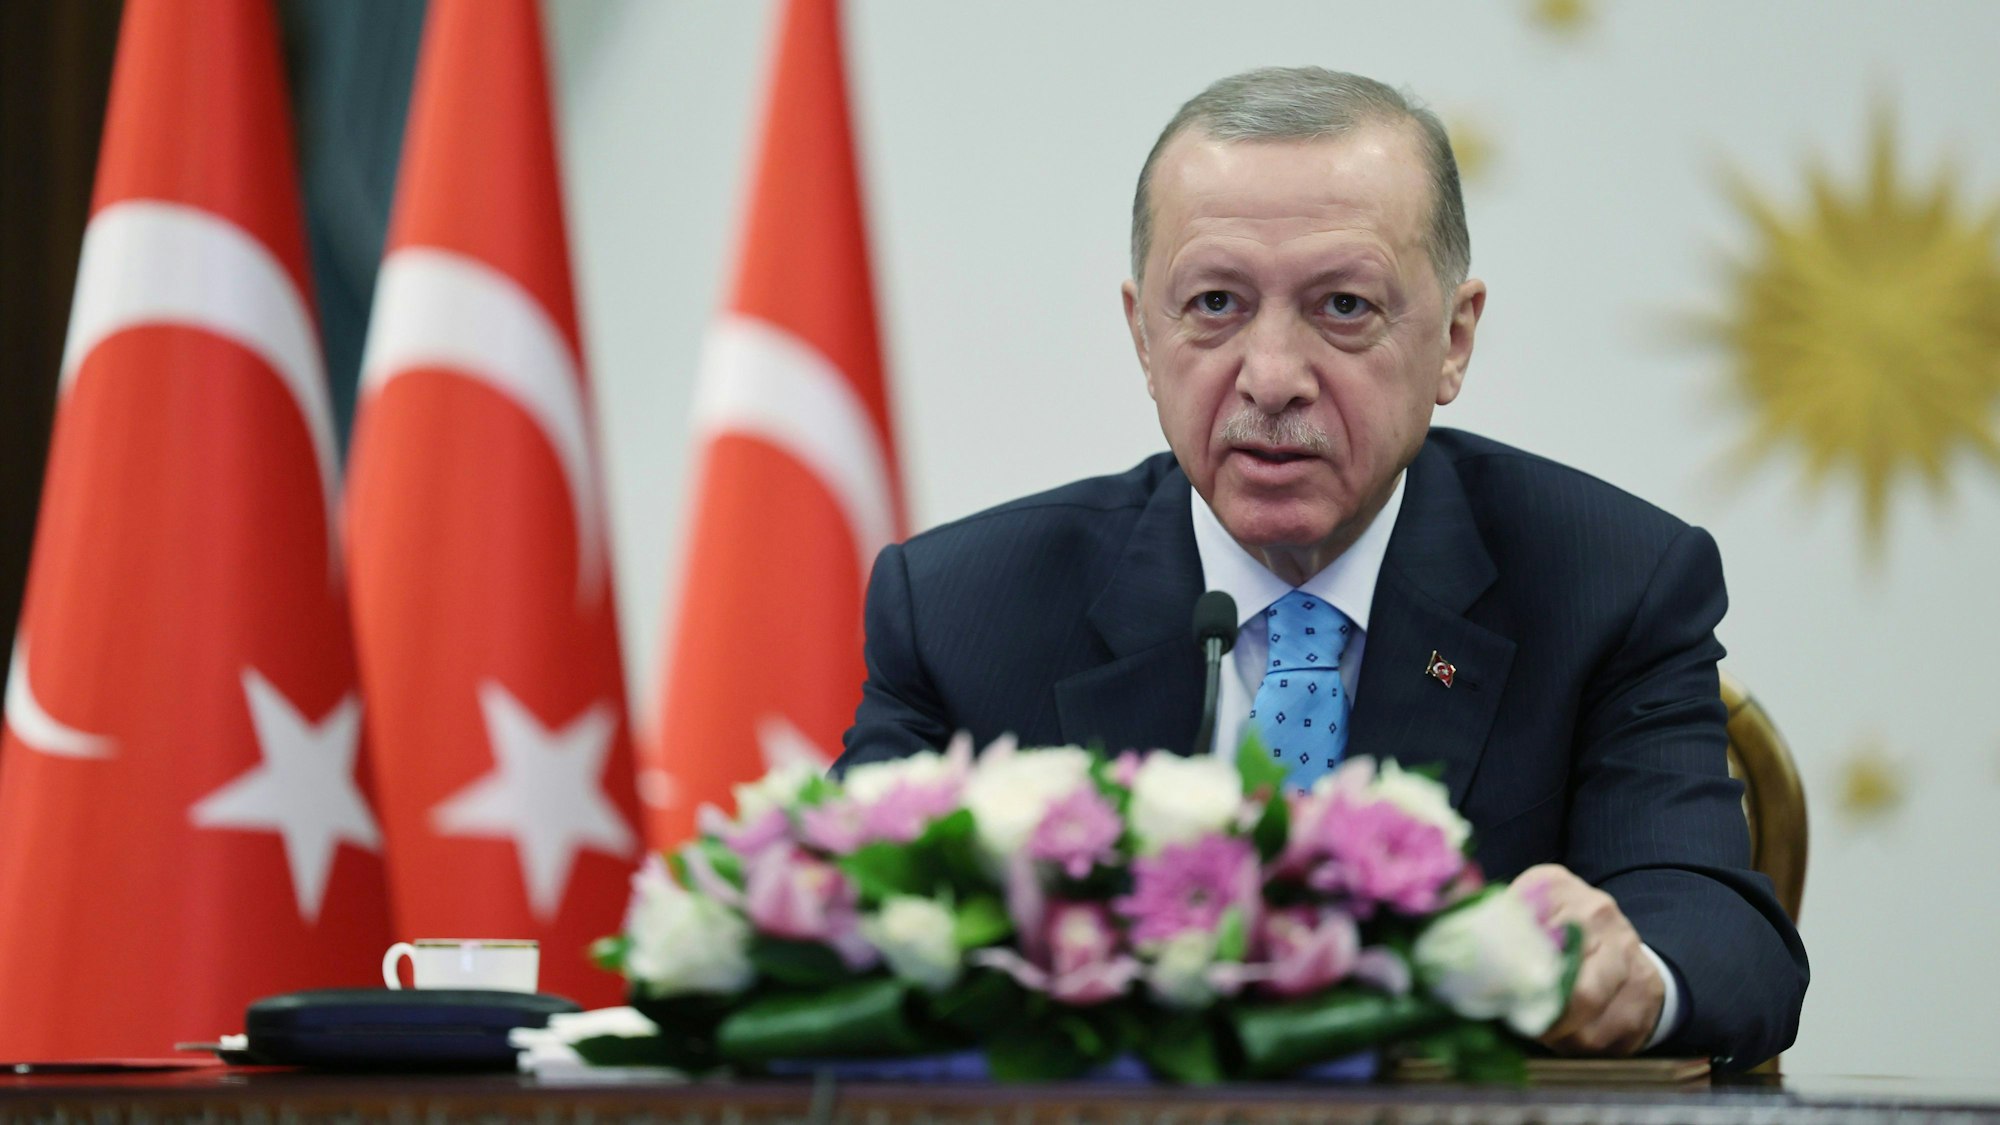 Recep Tayyip Erdogan bei einer Pressekonferenz.